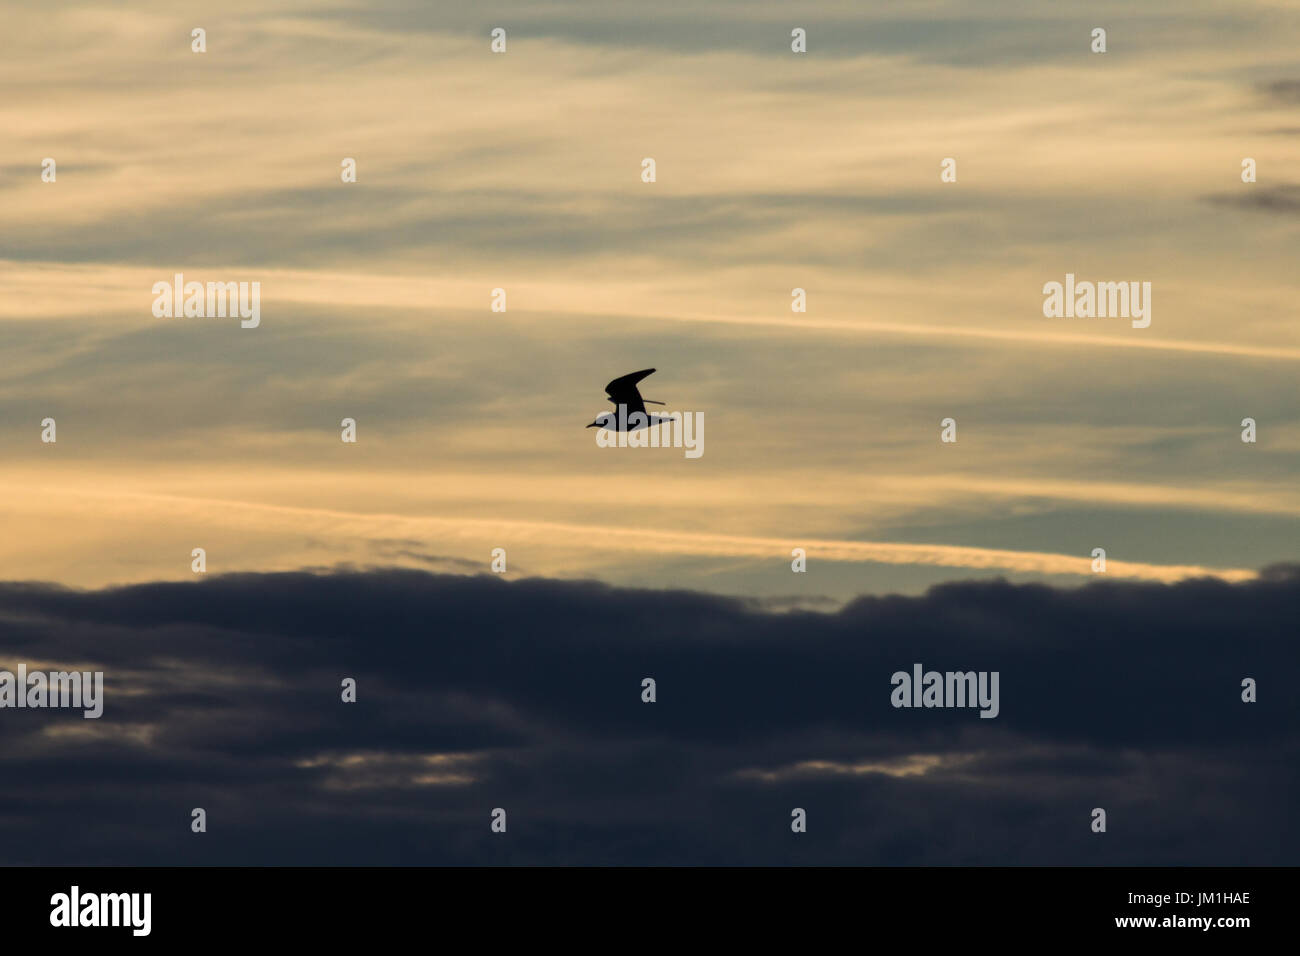 Une silhouette d'un oiseau voler contre un ciel avec nuages colorés magnifiques au coucher du soleil Banque D'Images